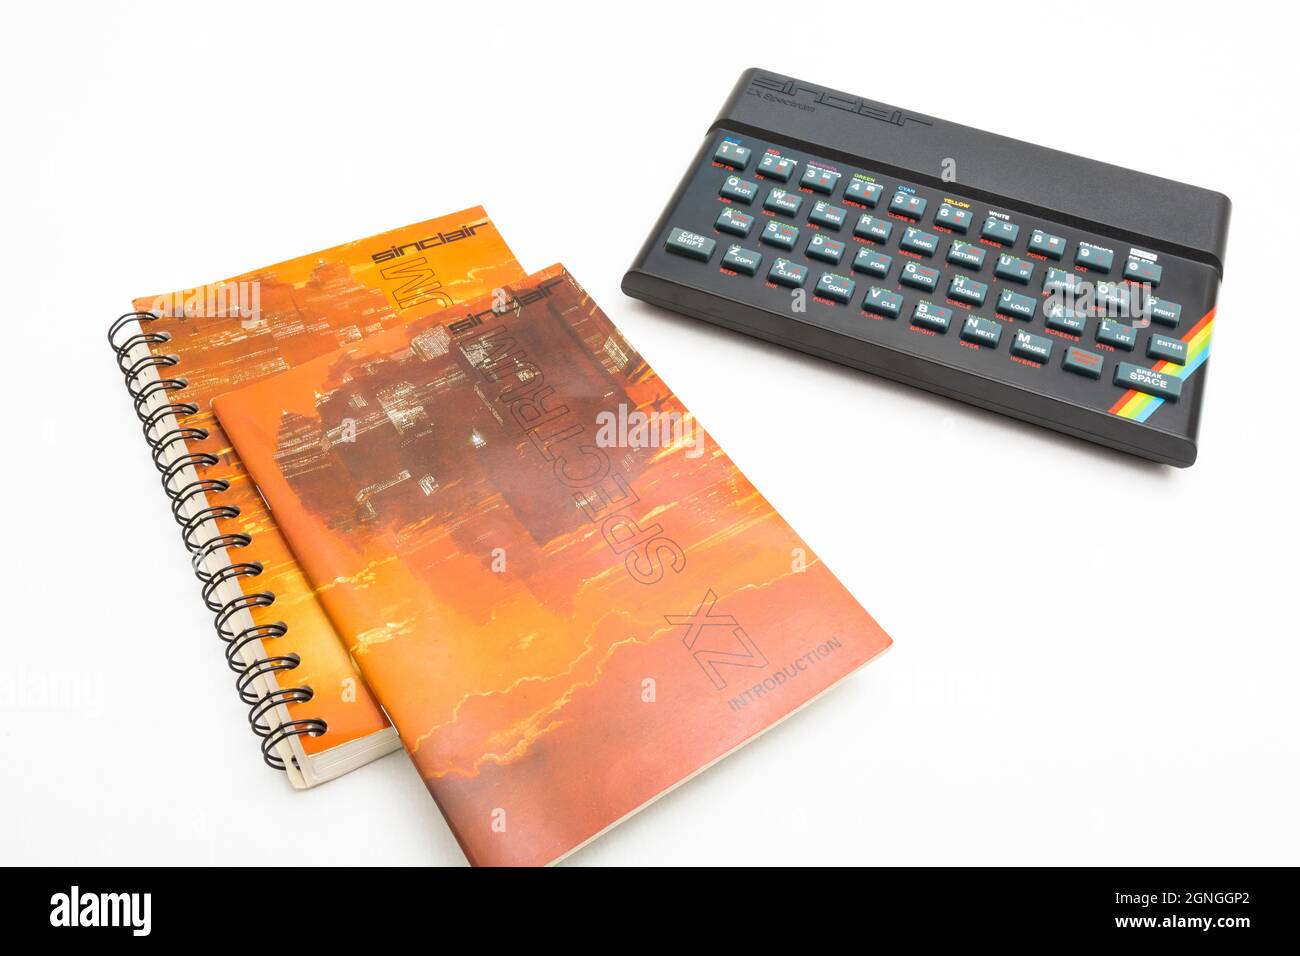 1982 Manuale di programmazione Sinclair ZX Spectrum & BASIC su sfondo bianco. Computer domestico a 8 bit antico/vintage. Ha ispirato una generazione. Note viste Foto Stock